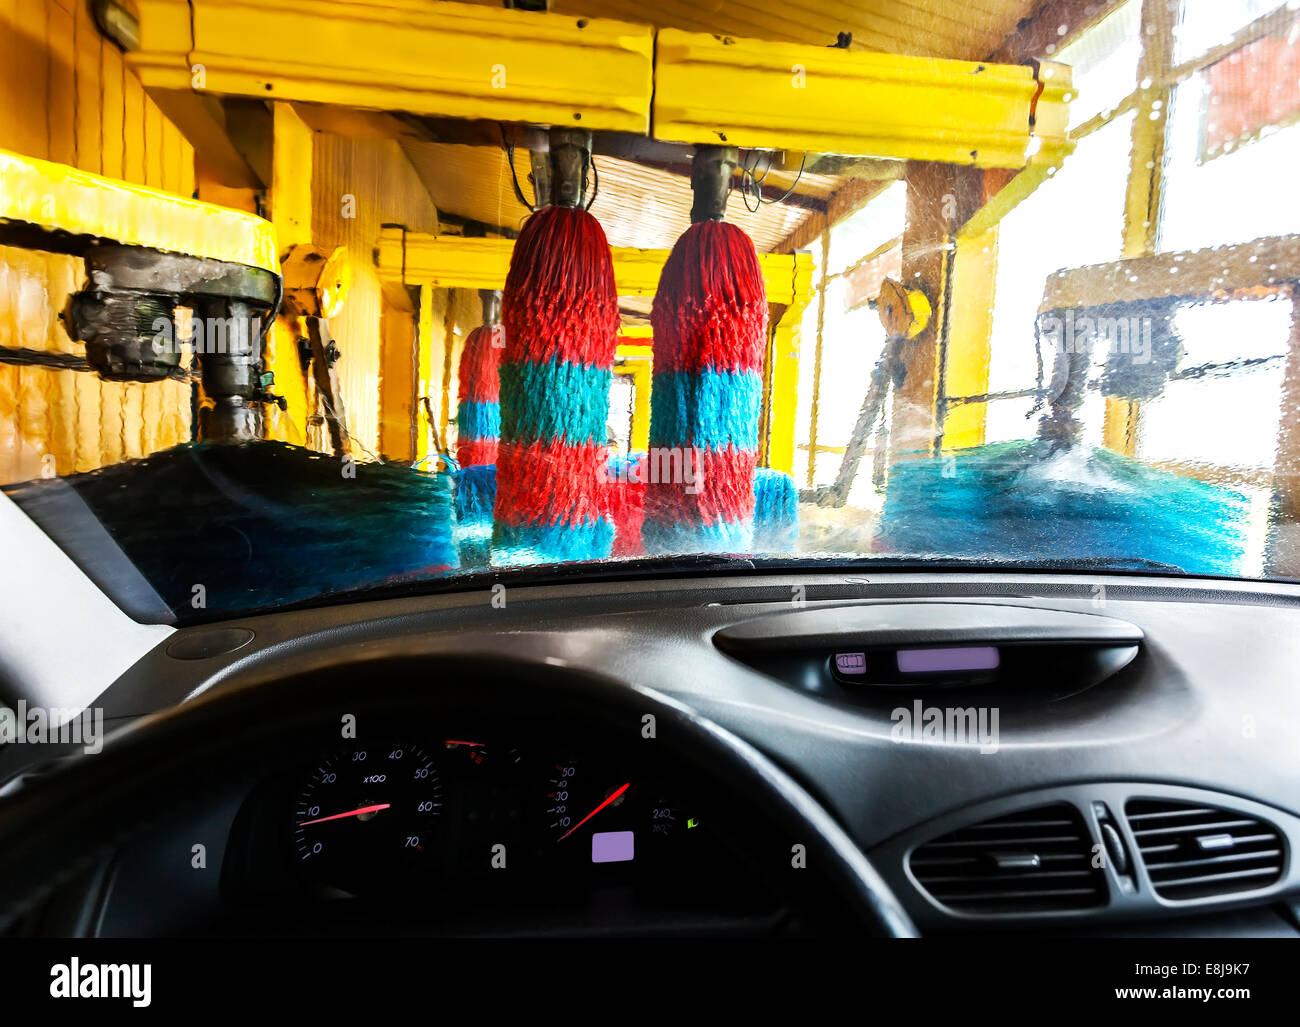 Lavage de voiture de l'intérieur d'une voiture pendant le lavage. Banque D'Images